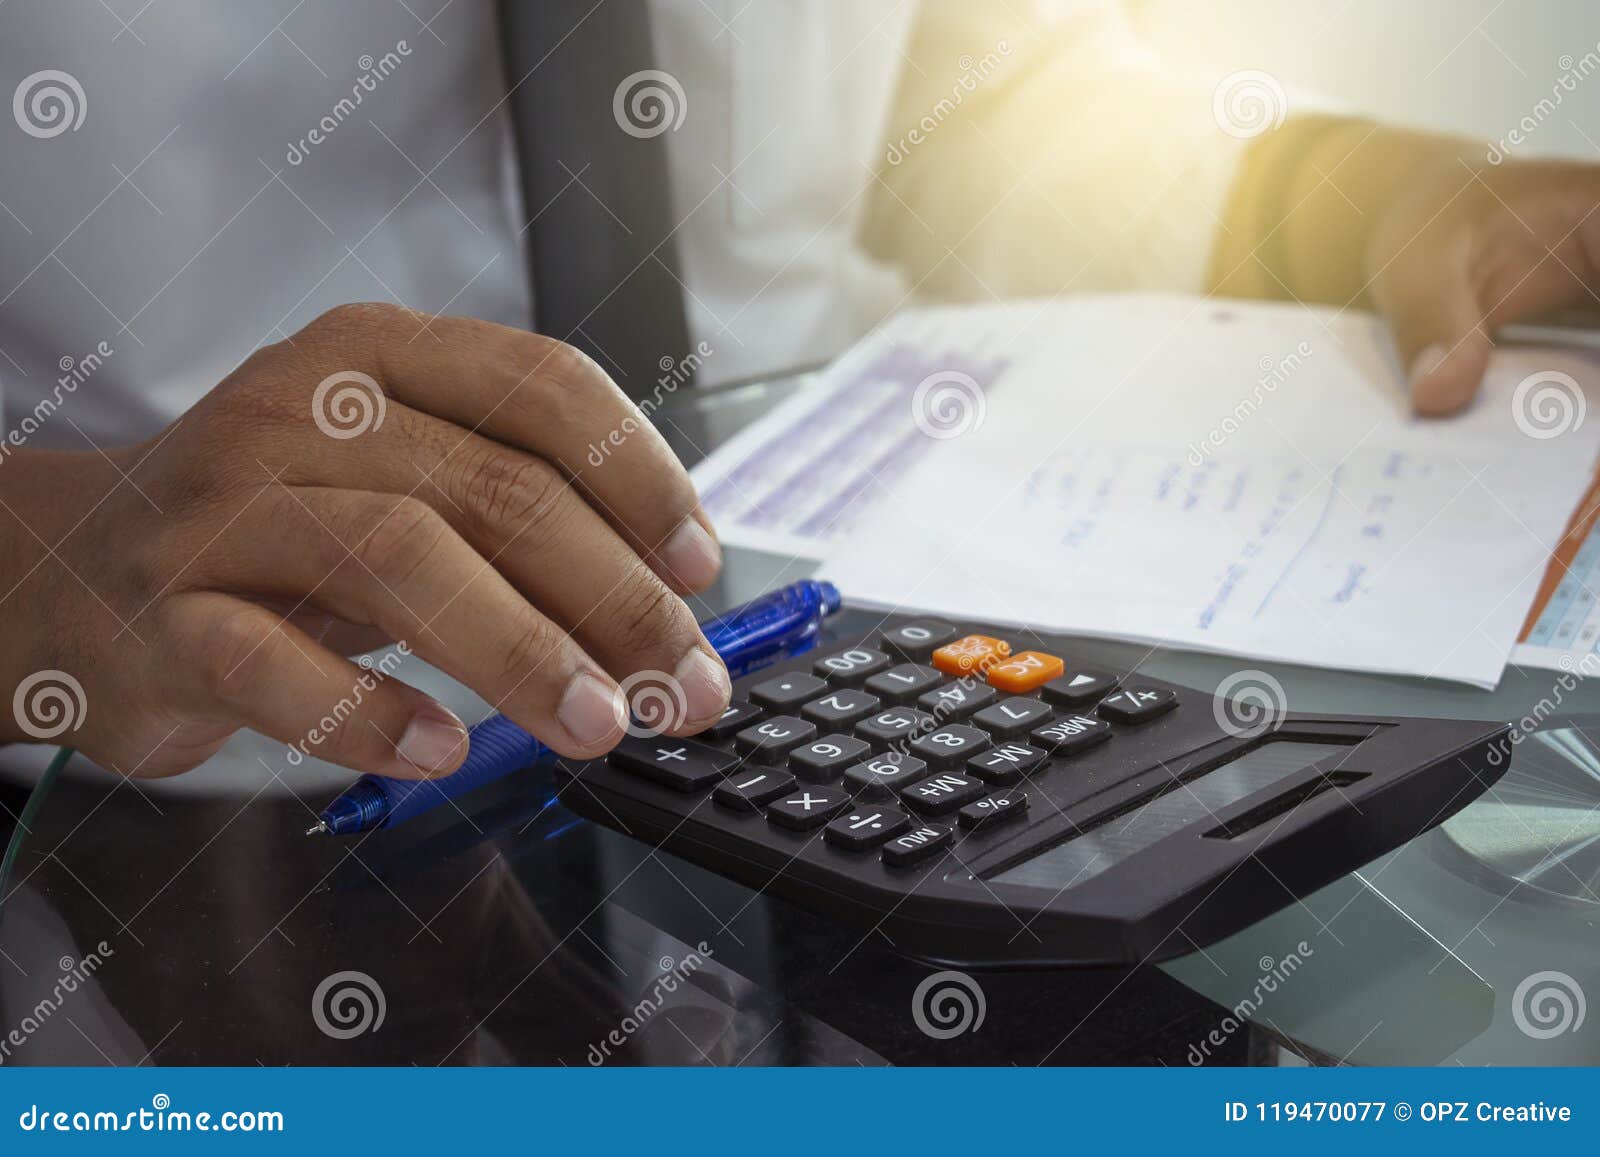 automotive finance calculator